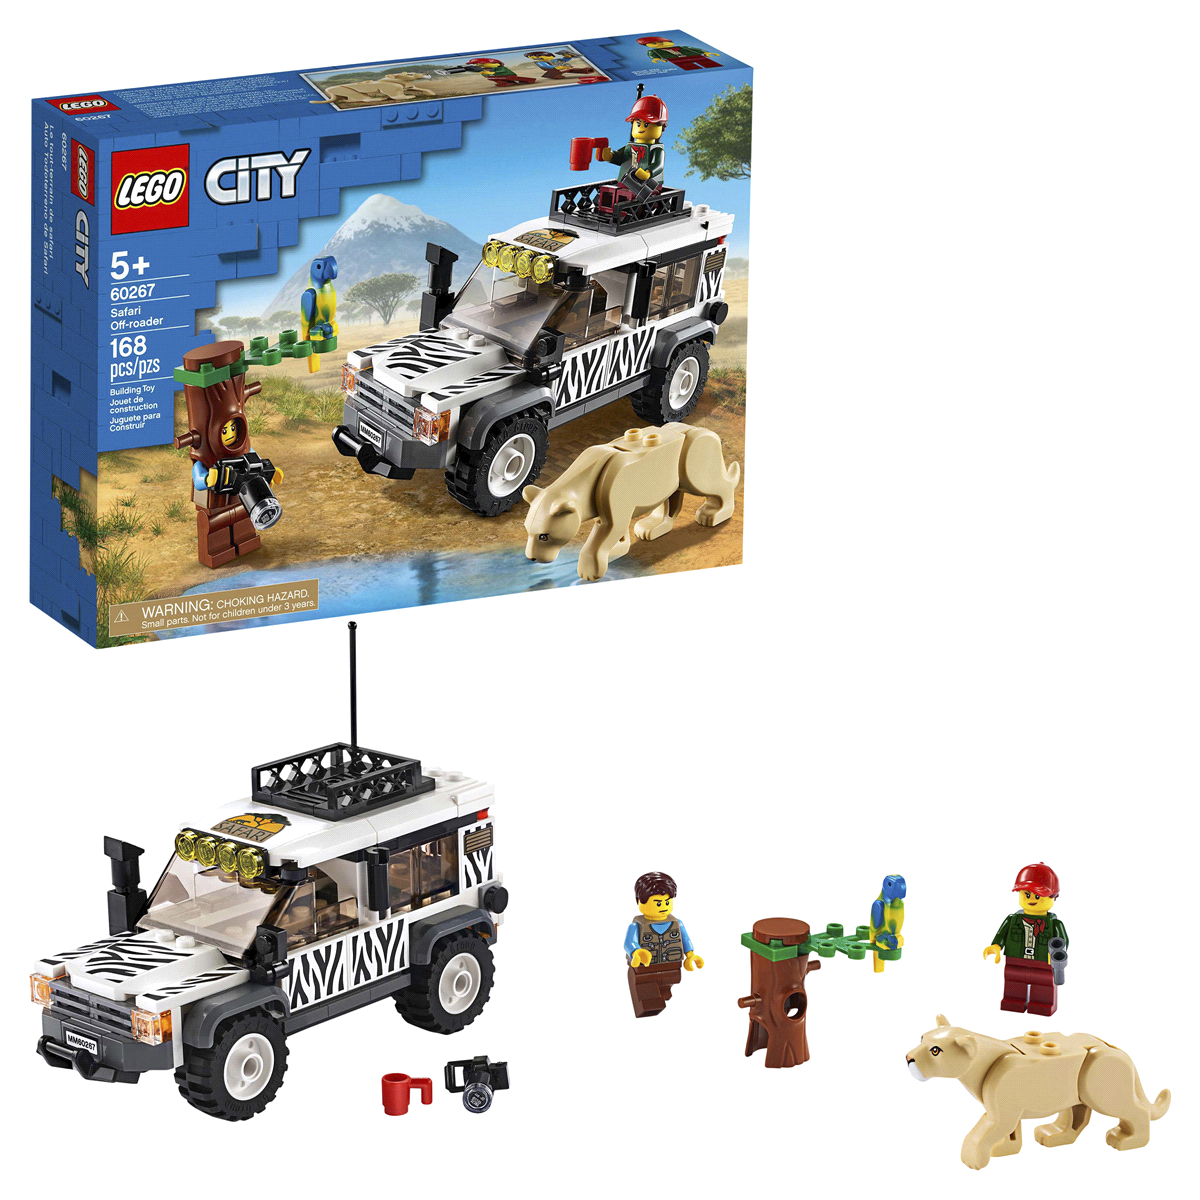 slide 1 of 7, LEGO City Safari Off-Roader 60267 Building Set, 1 ct